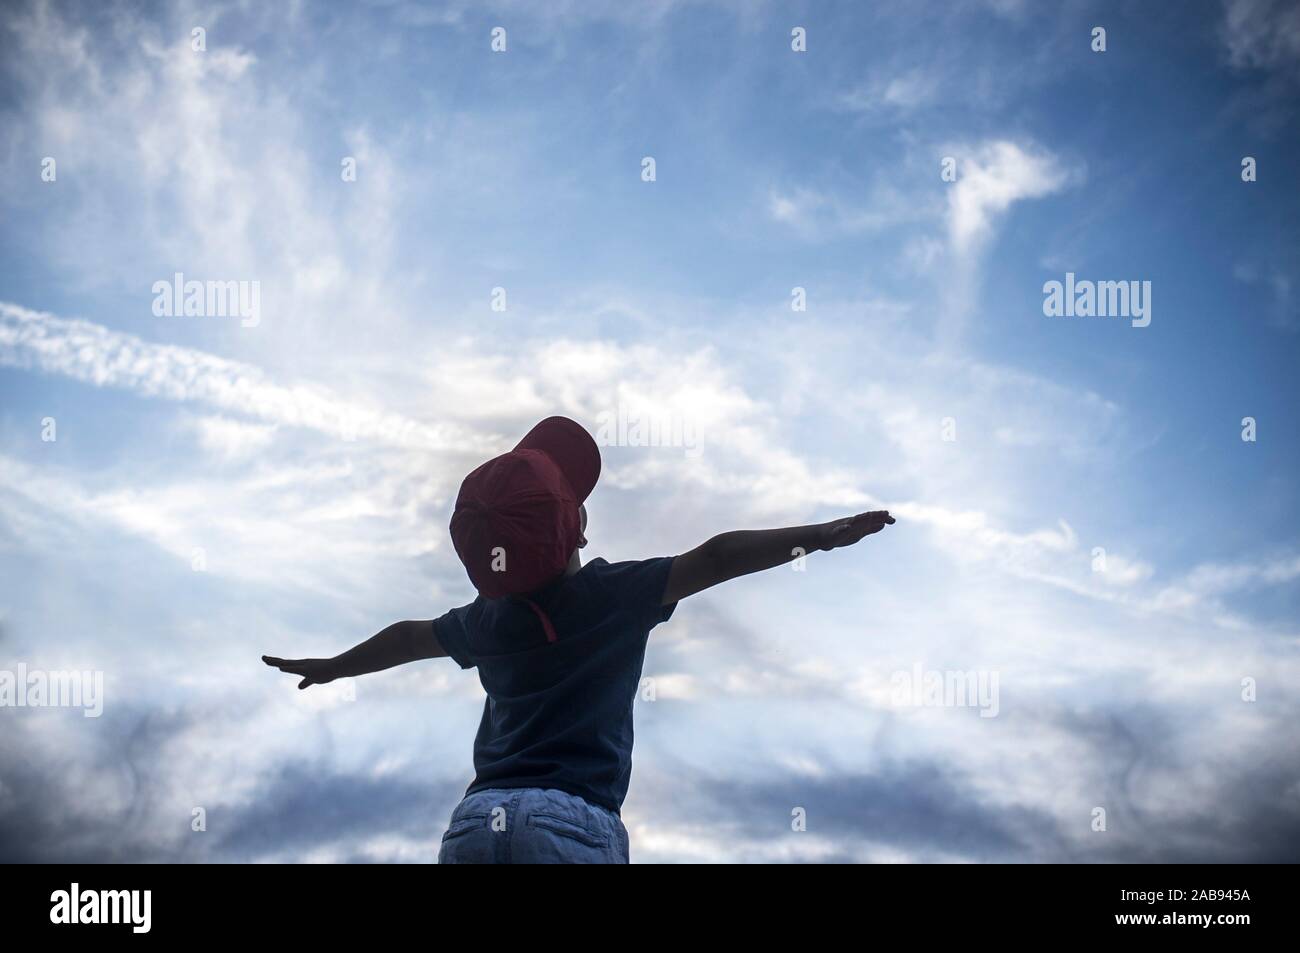 4 Jahre alter Junge vorgibt, über bewölkter Himmel zu fliegen. Kinder Phantasie Konzept zu fördern. Stockfoto